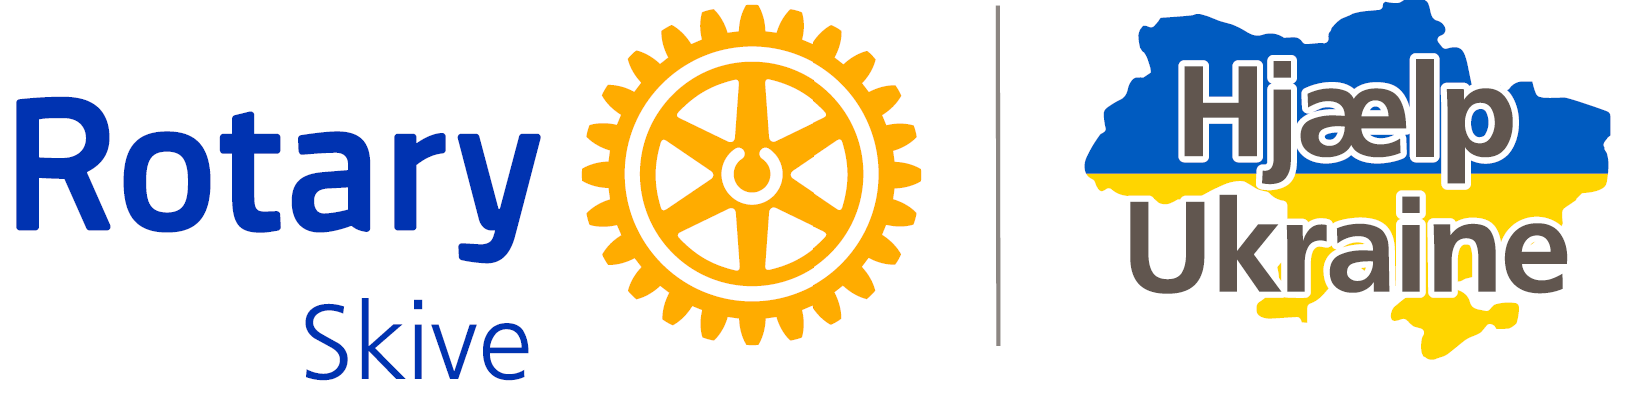 Ukraine Help Skivehus Rotary Klub